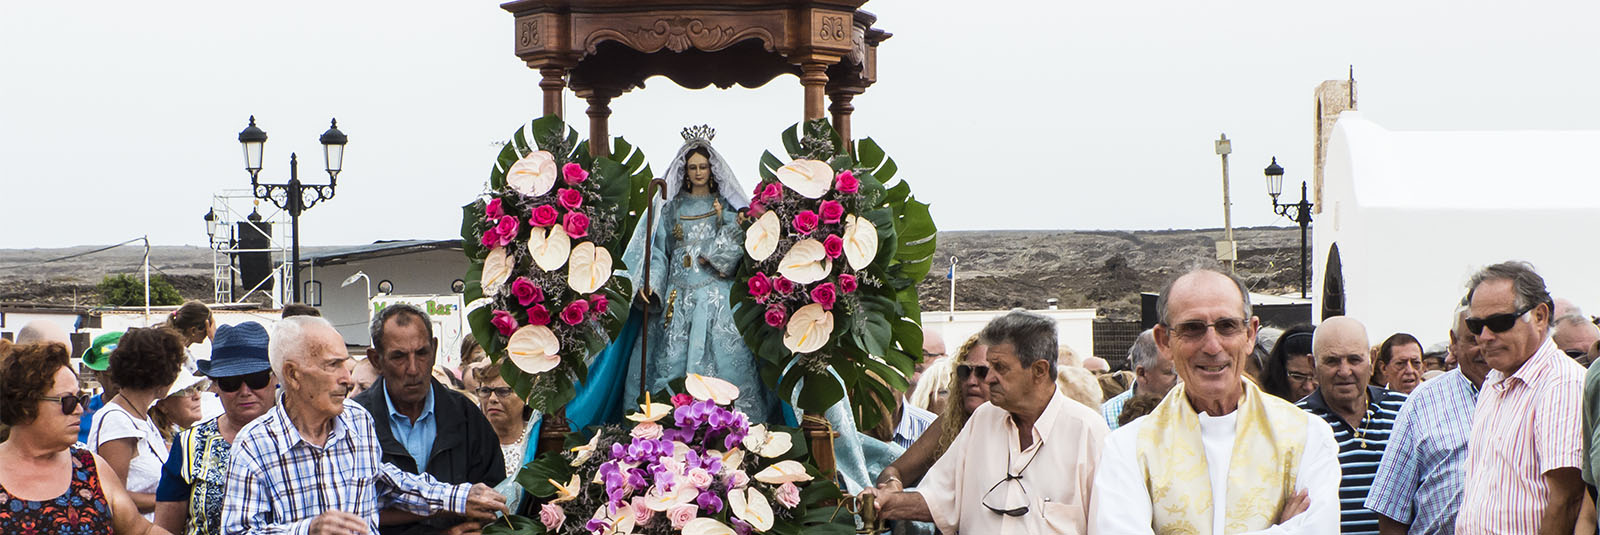 Traditionen auf Fuerteventura – Wallfahrten, Heilige, Fiestas und Pilgerschaften.